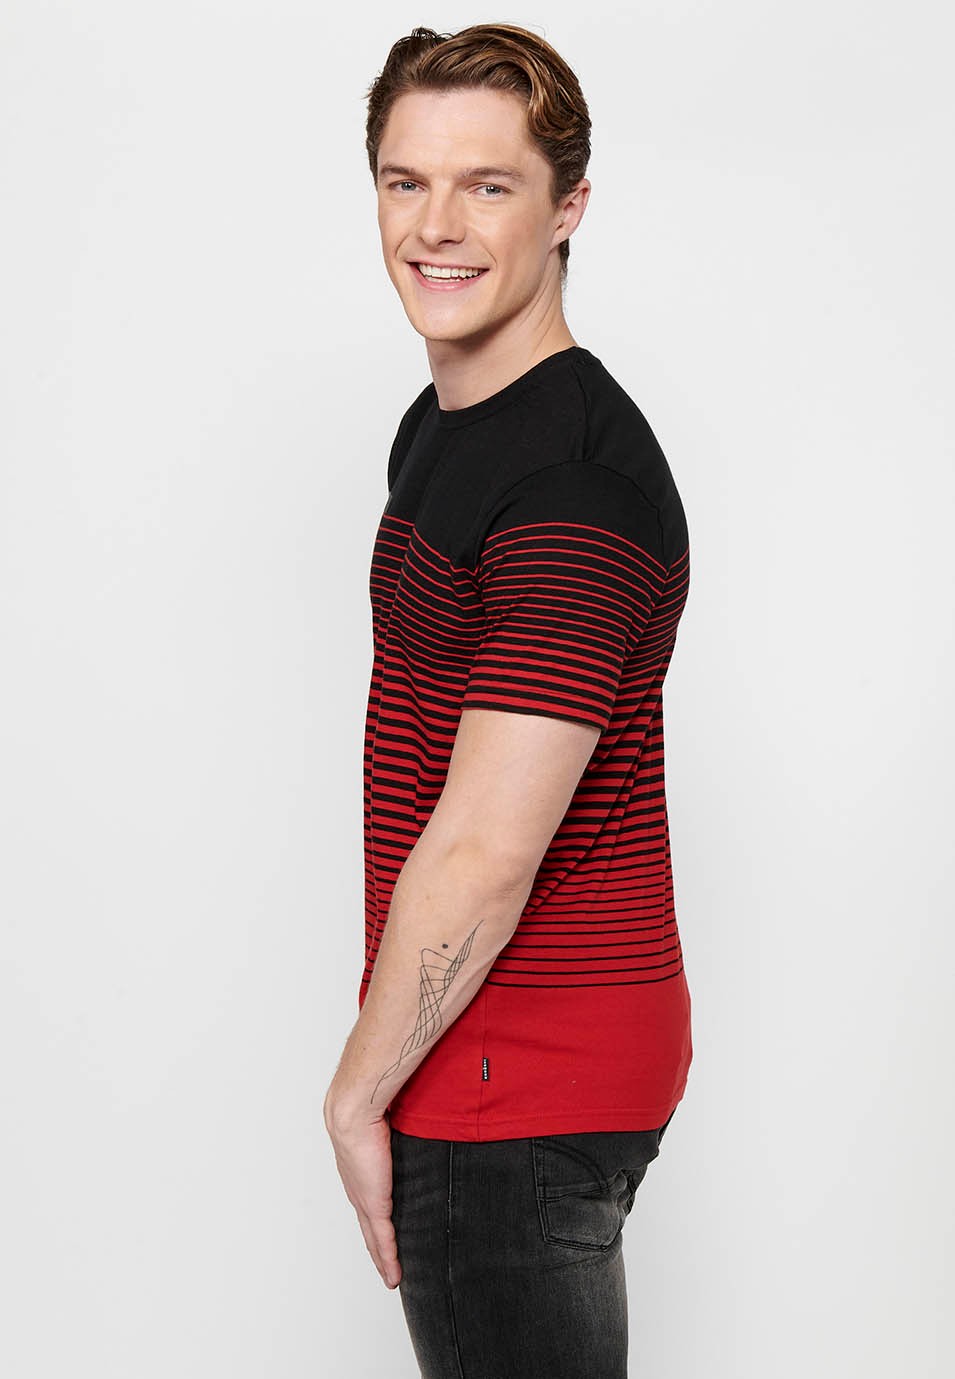 Camiseta de manga corta, estampado degradado a rayas, cuello redondo, color rojo para hombre 5